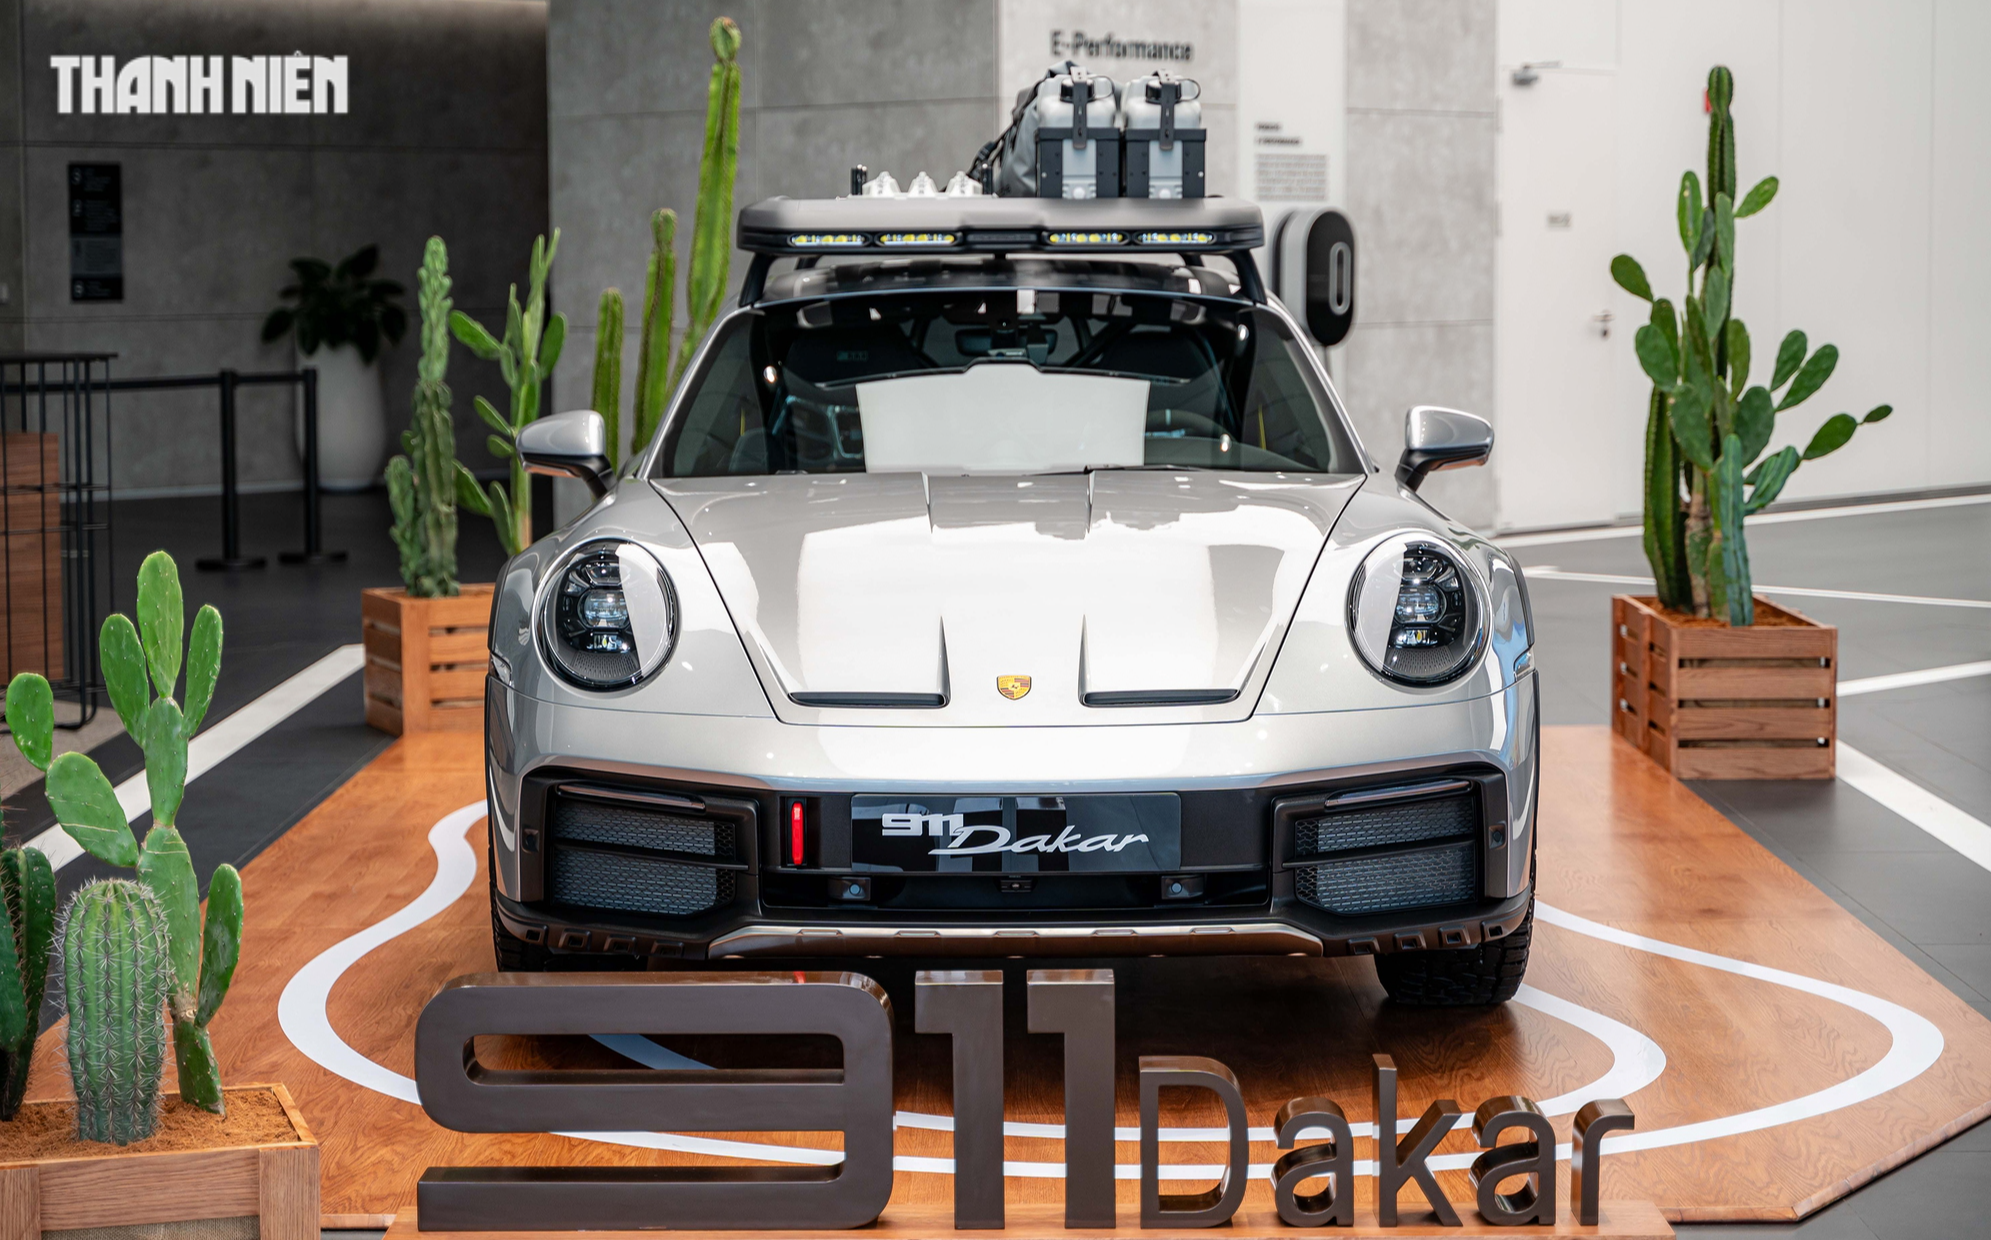 'Hàng hiếm' Porsche 911 Dakar đầu tiên về Việt Nam giá 16 tỉ đồng đã có chủ - Ảnh 1.